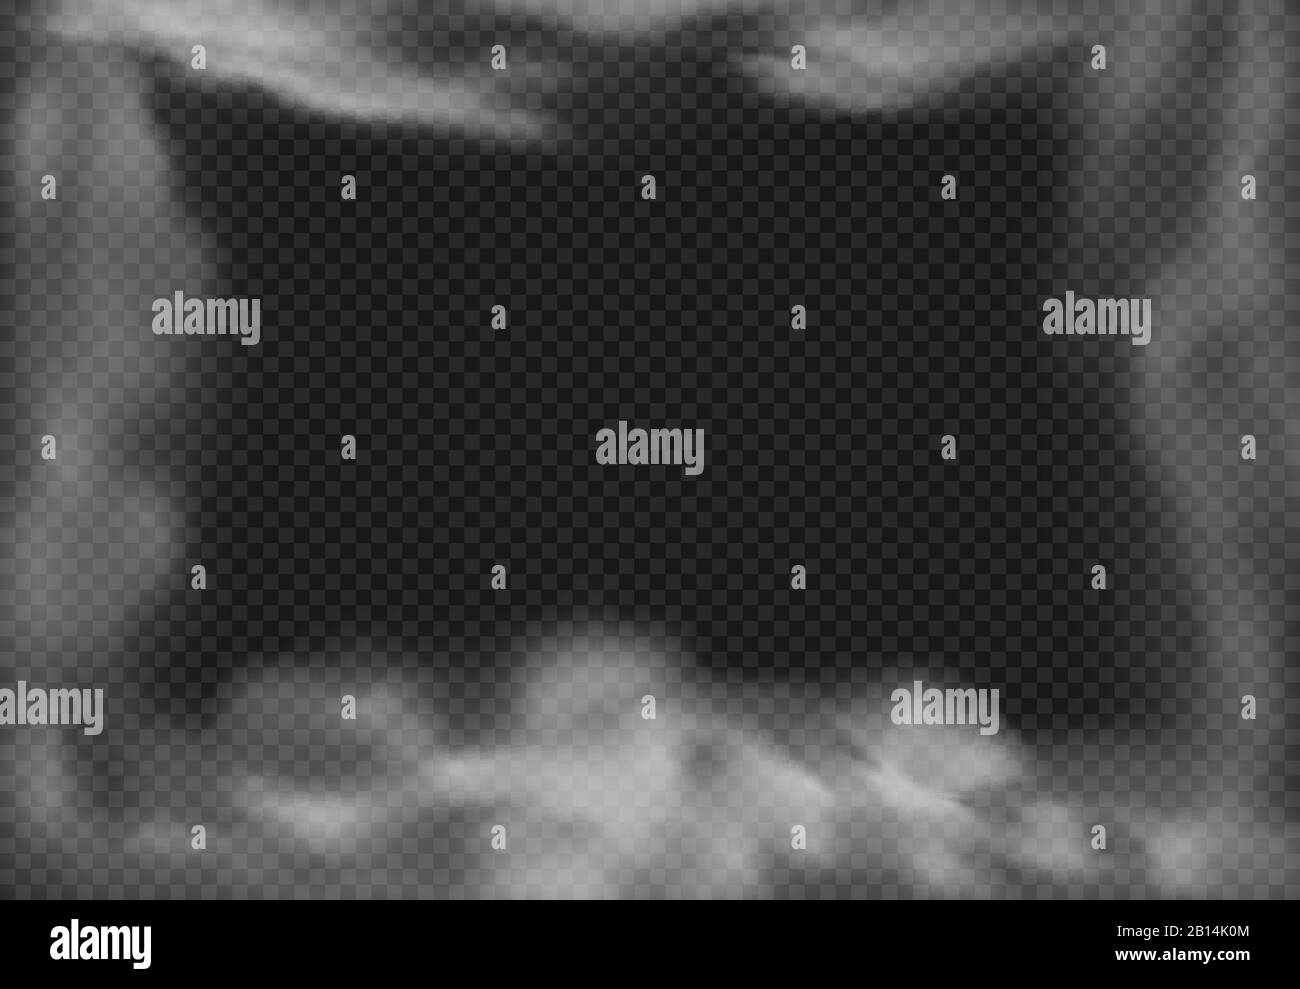 Marco nublado. Niebla ahumada, efecto humo y nubes de niebla realista ilustración vectorial aislada Ilustración del Vector